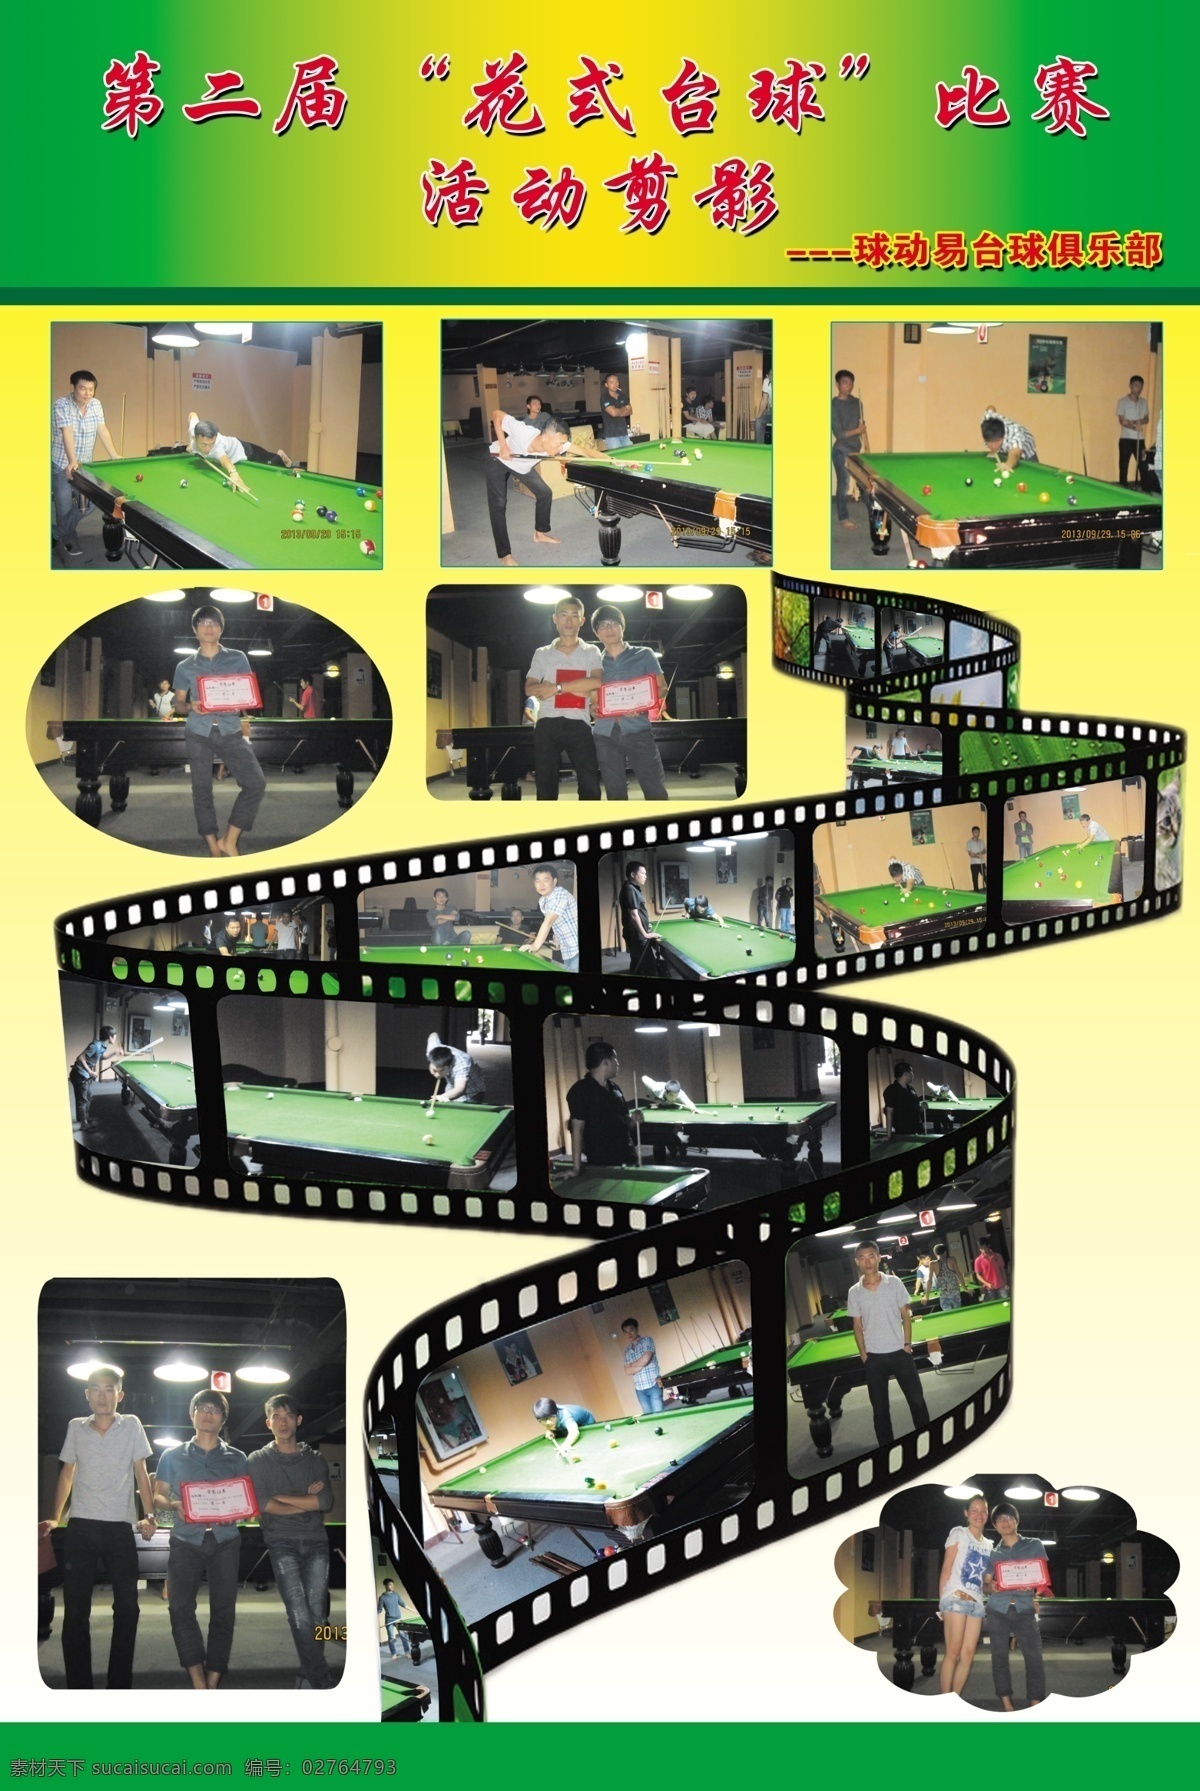 广告设计模板 台球 台球海报 源文件 展板模板 桌球 活动剪影 模板下载 台球活动剪影 海报 美式台球 台球活动 其他海报设计